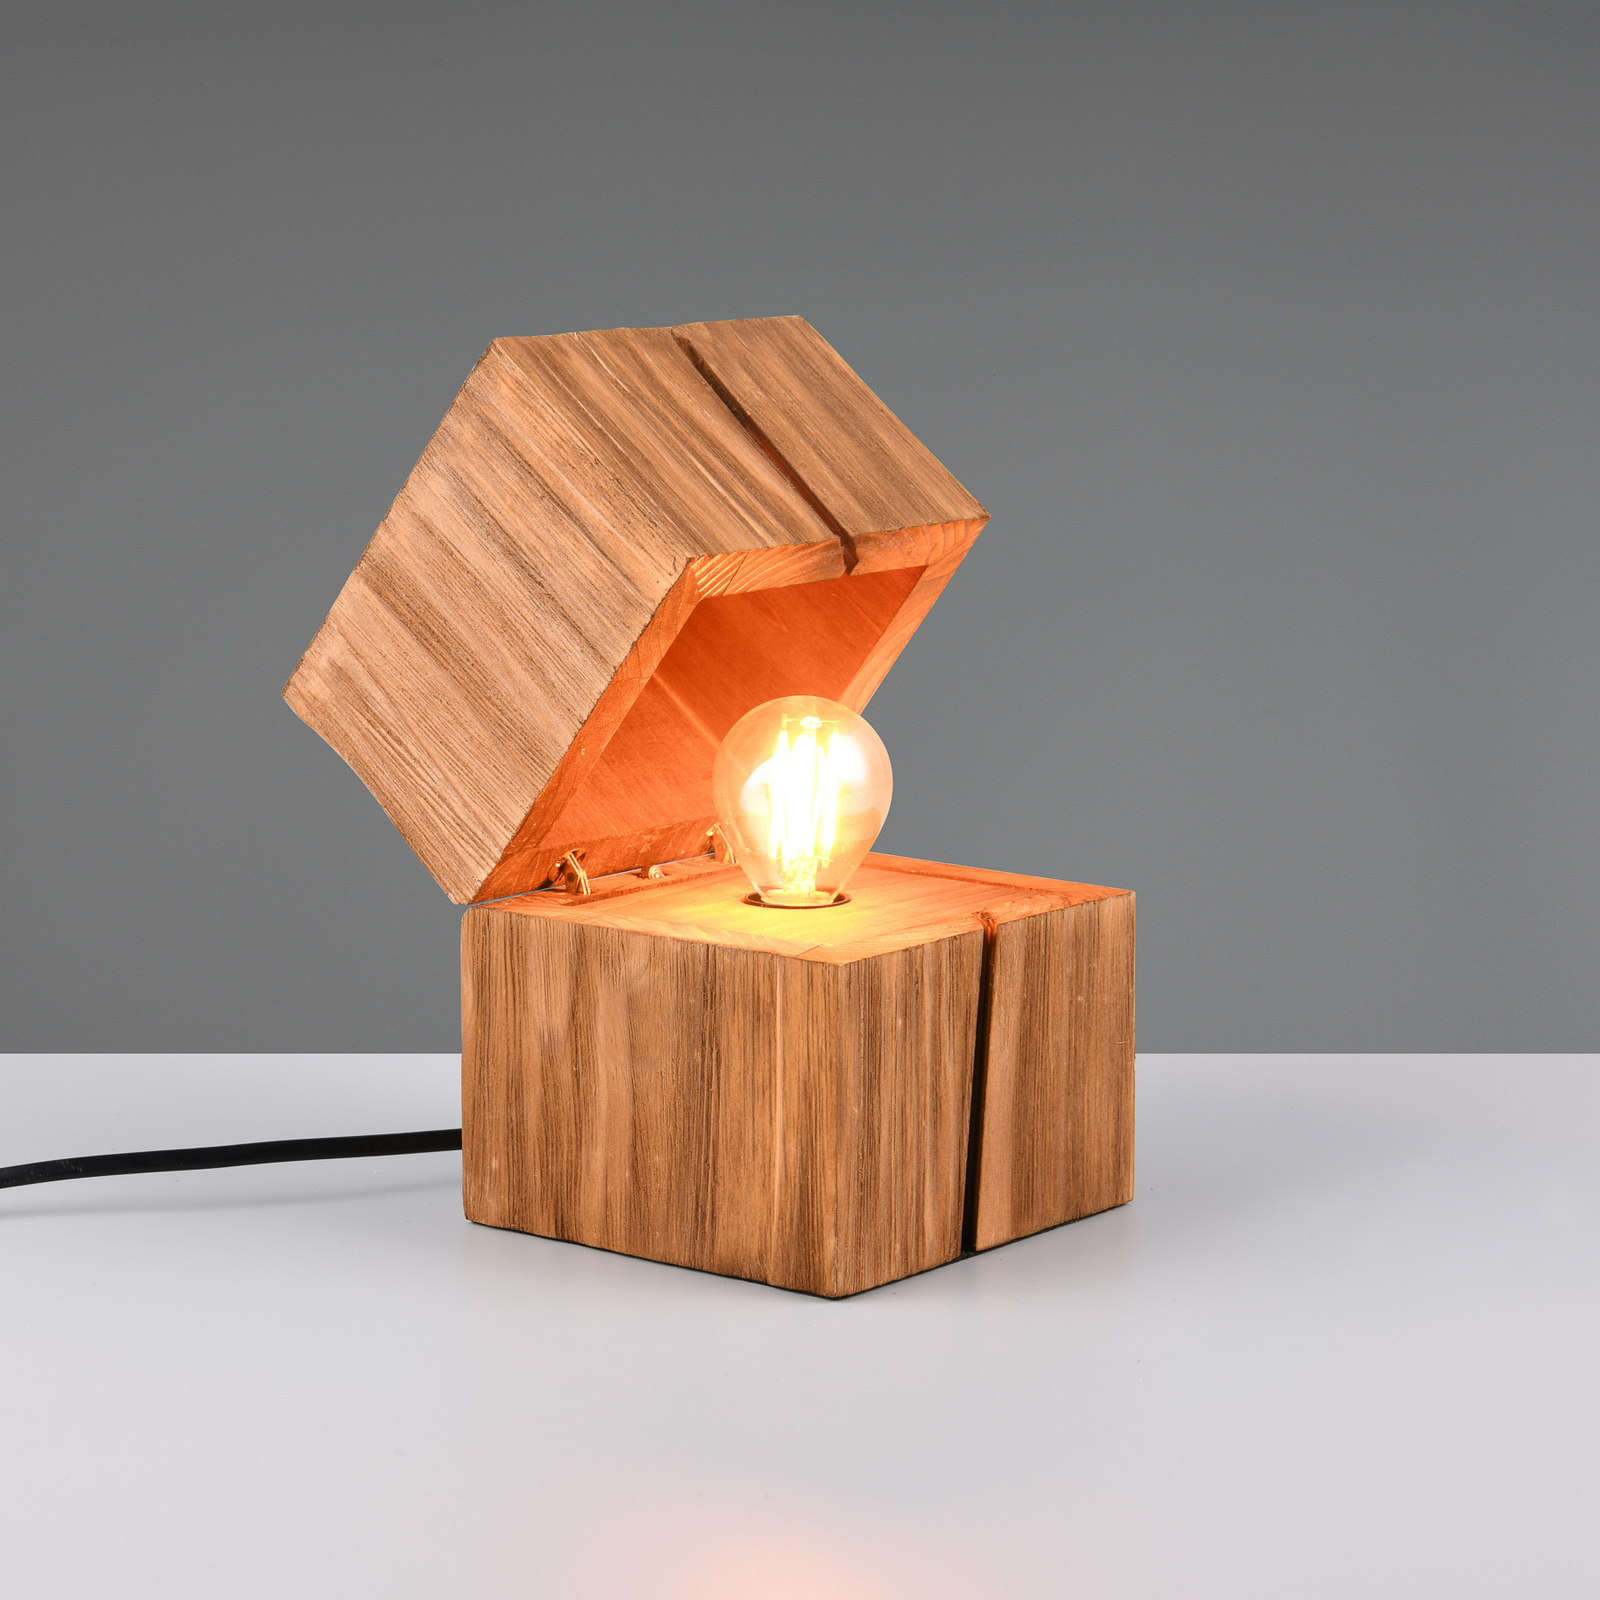 Treasure table lamp, natural finish, wood, hinged